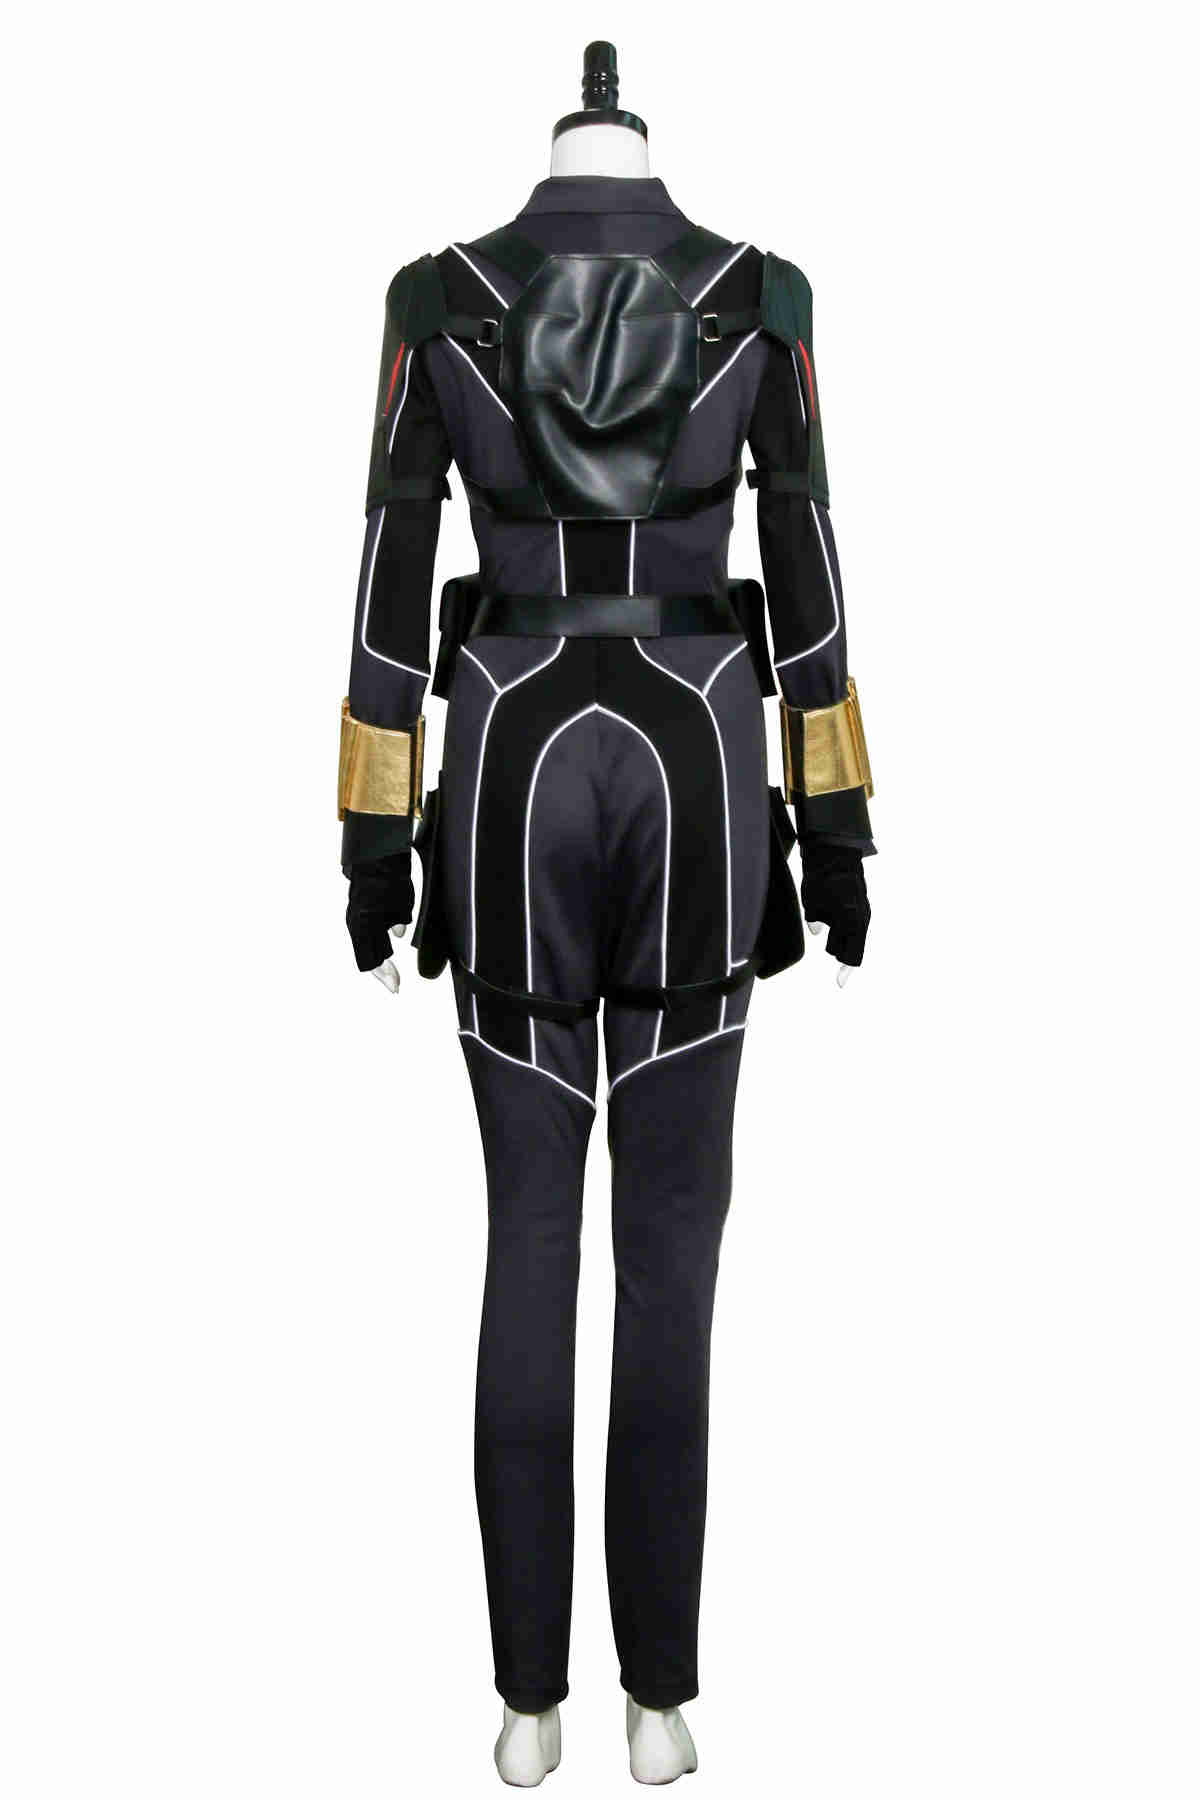 2020 Film Black Widow Outfit Natasha Romanoff Jumpsuit Superheroe cosplay costume-Takerlama